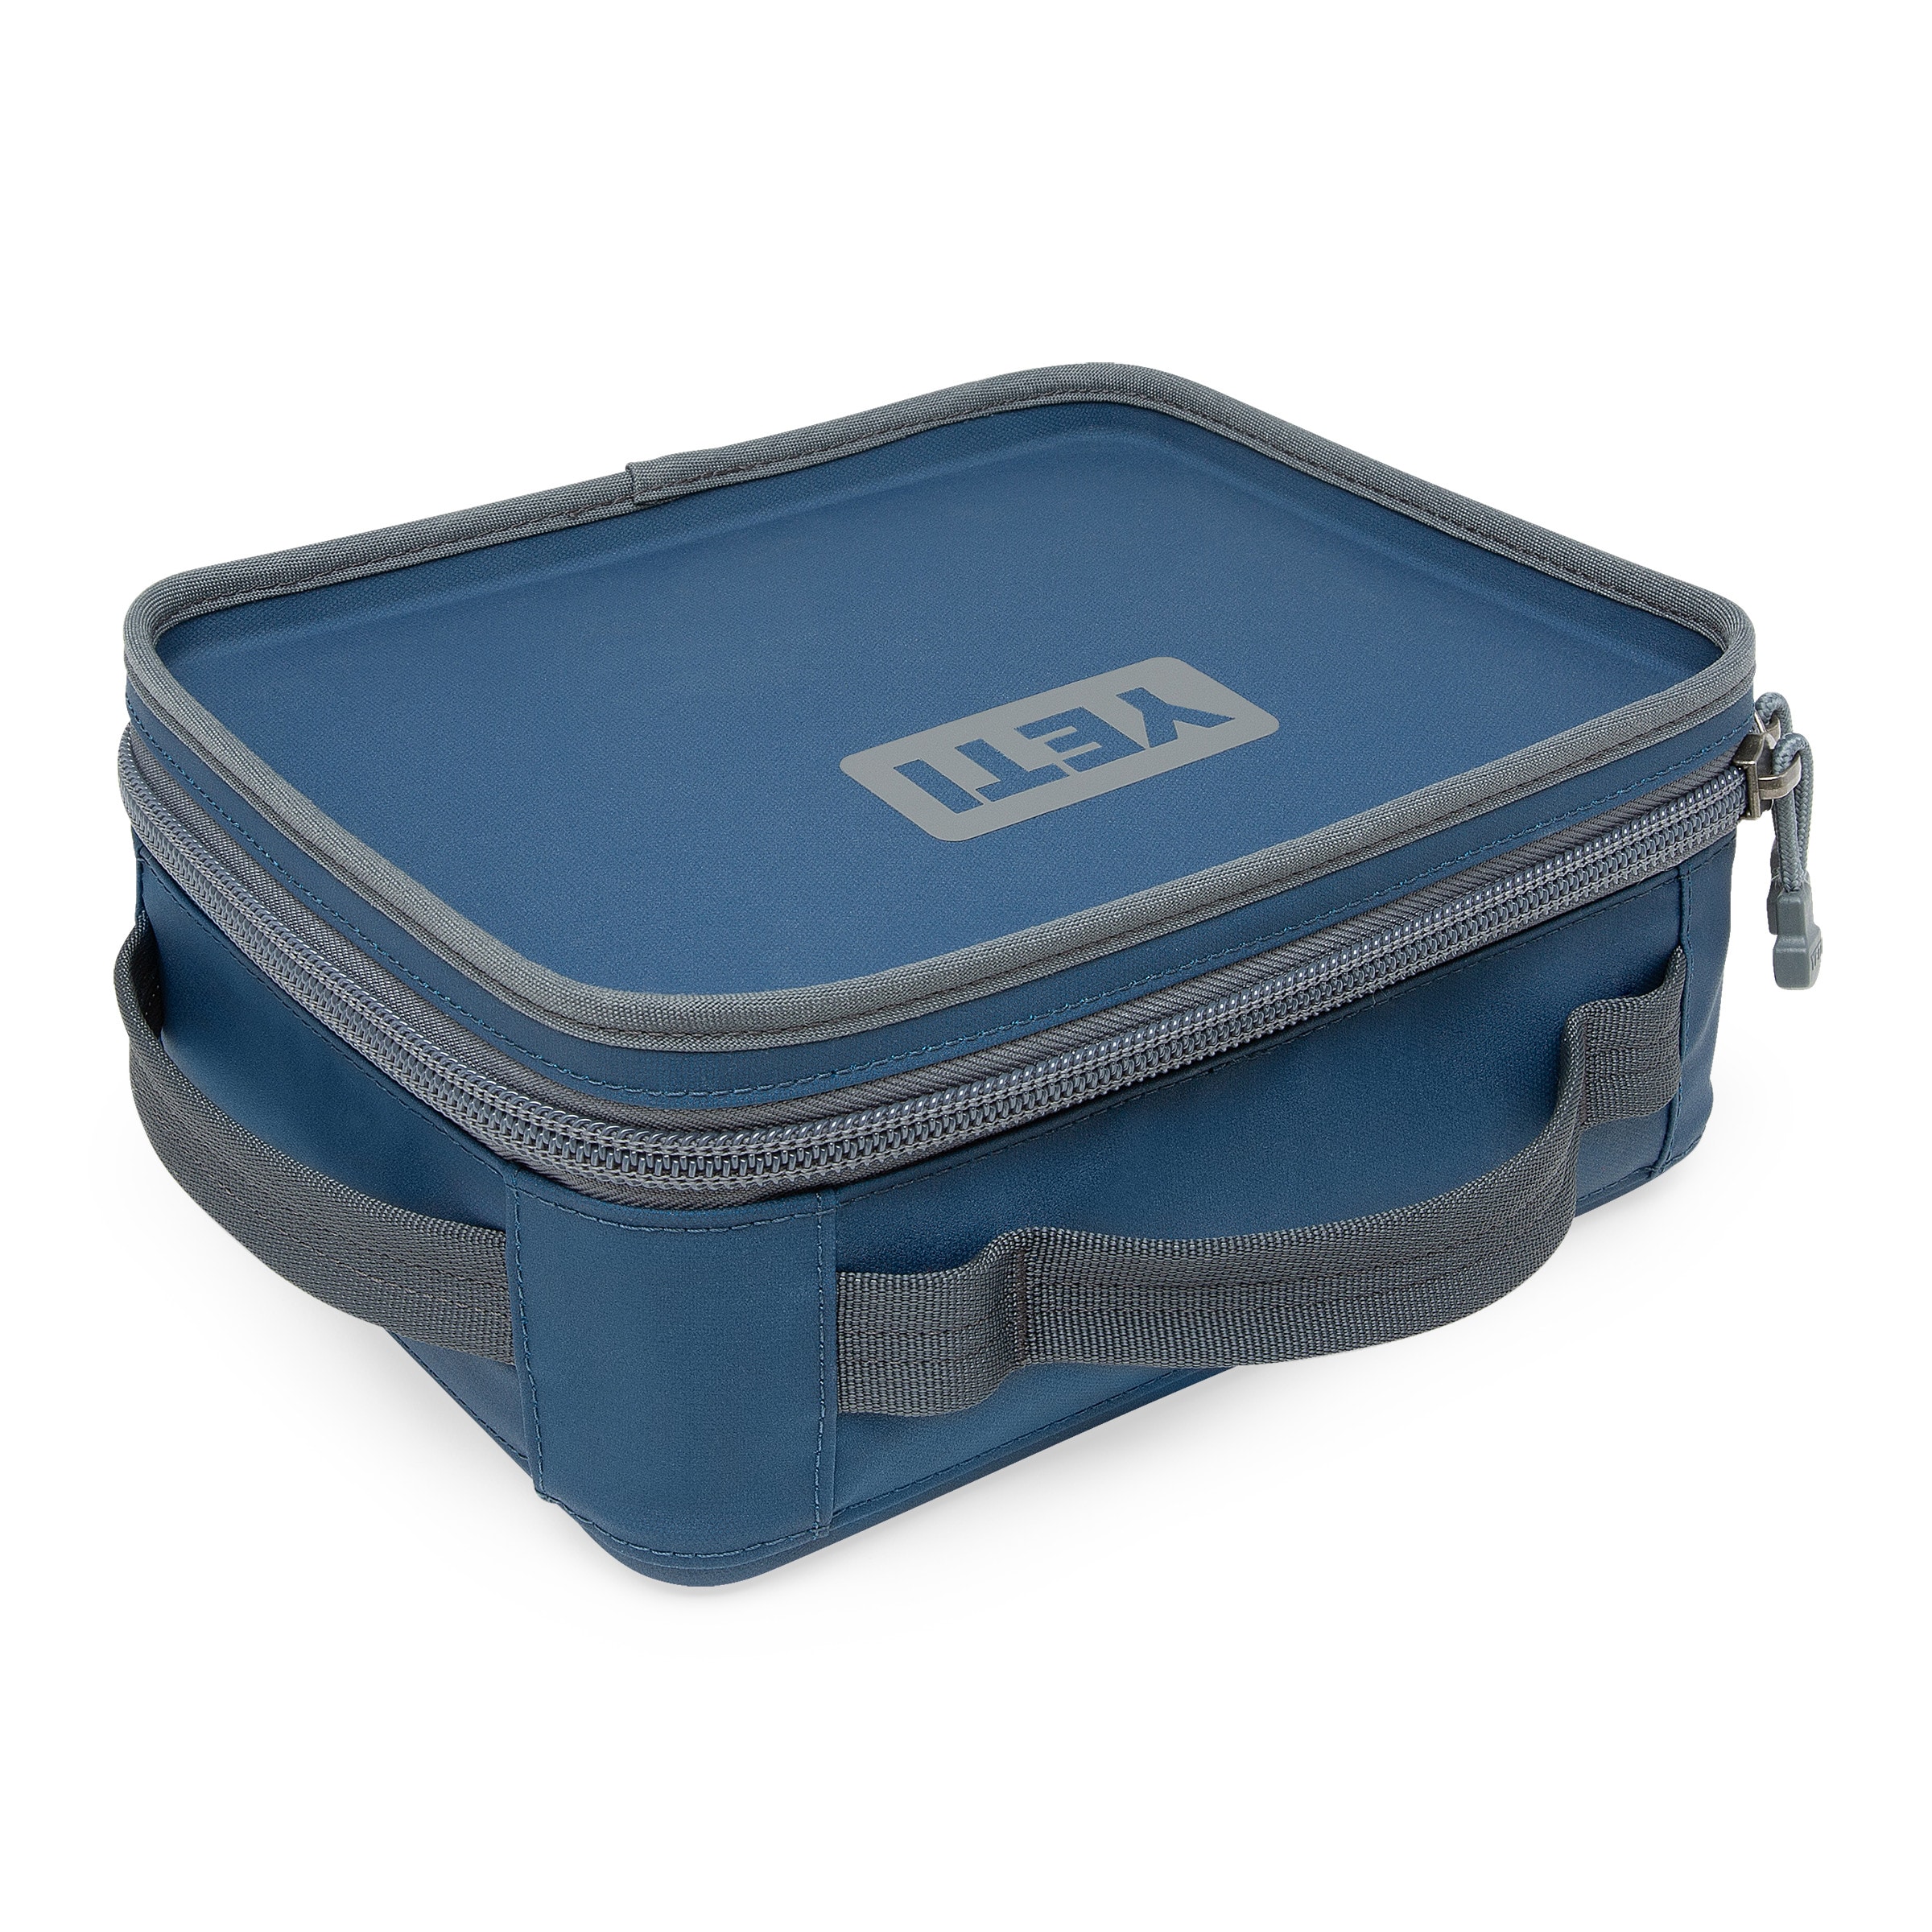 Yeti 18060130050 Daytrip Lunch Box - Aquifer Blue 